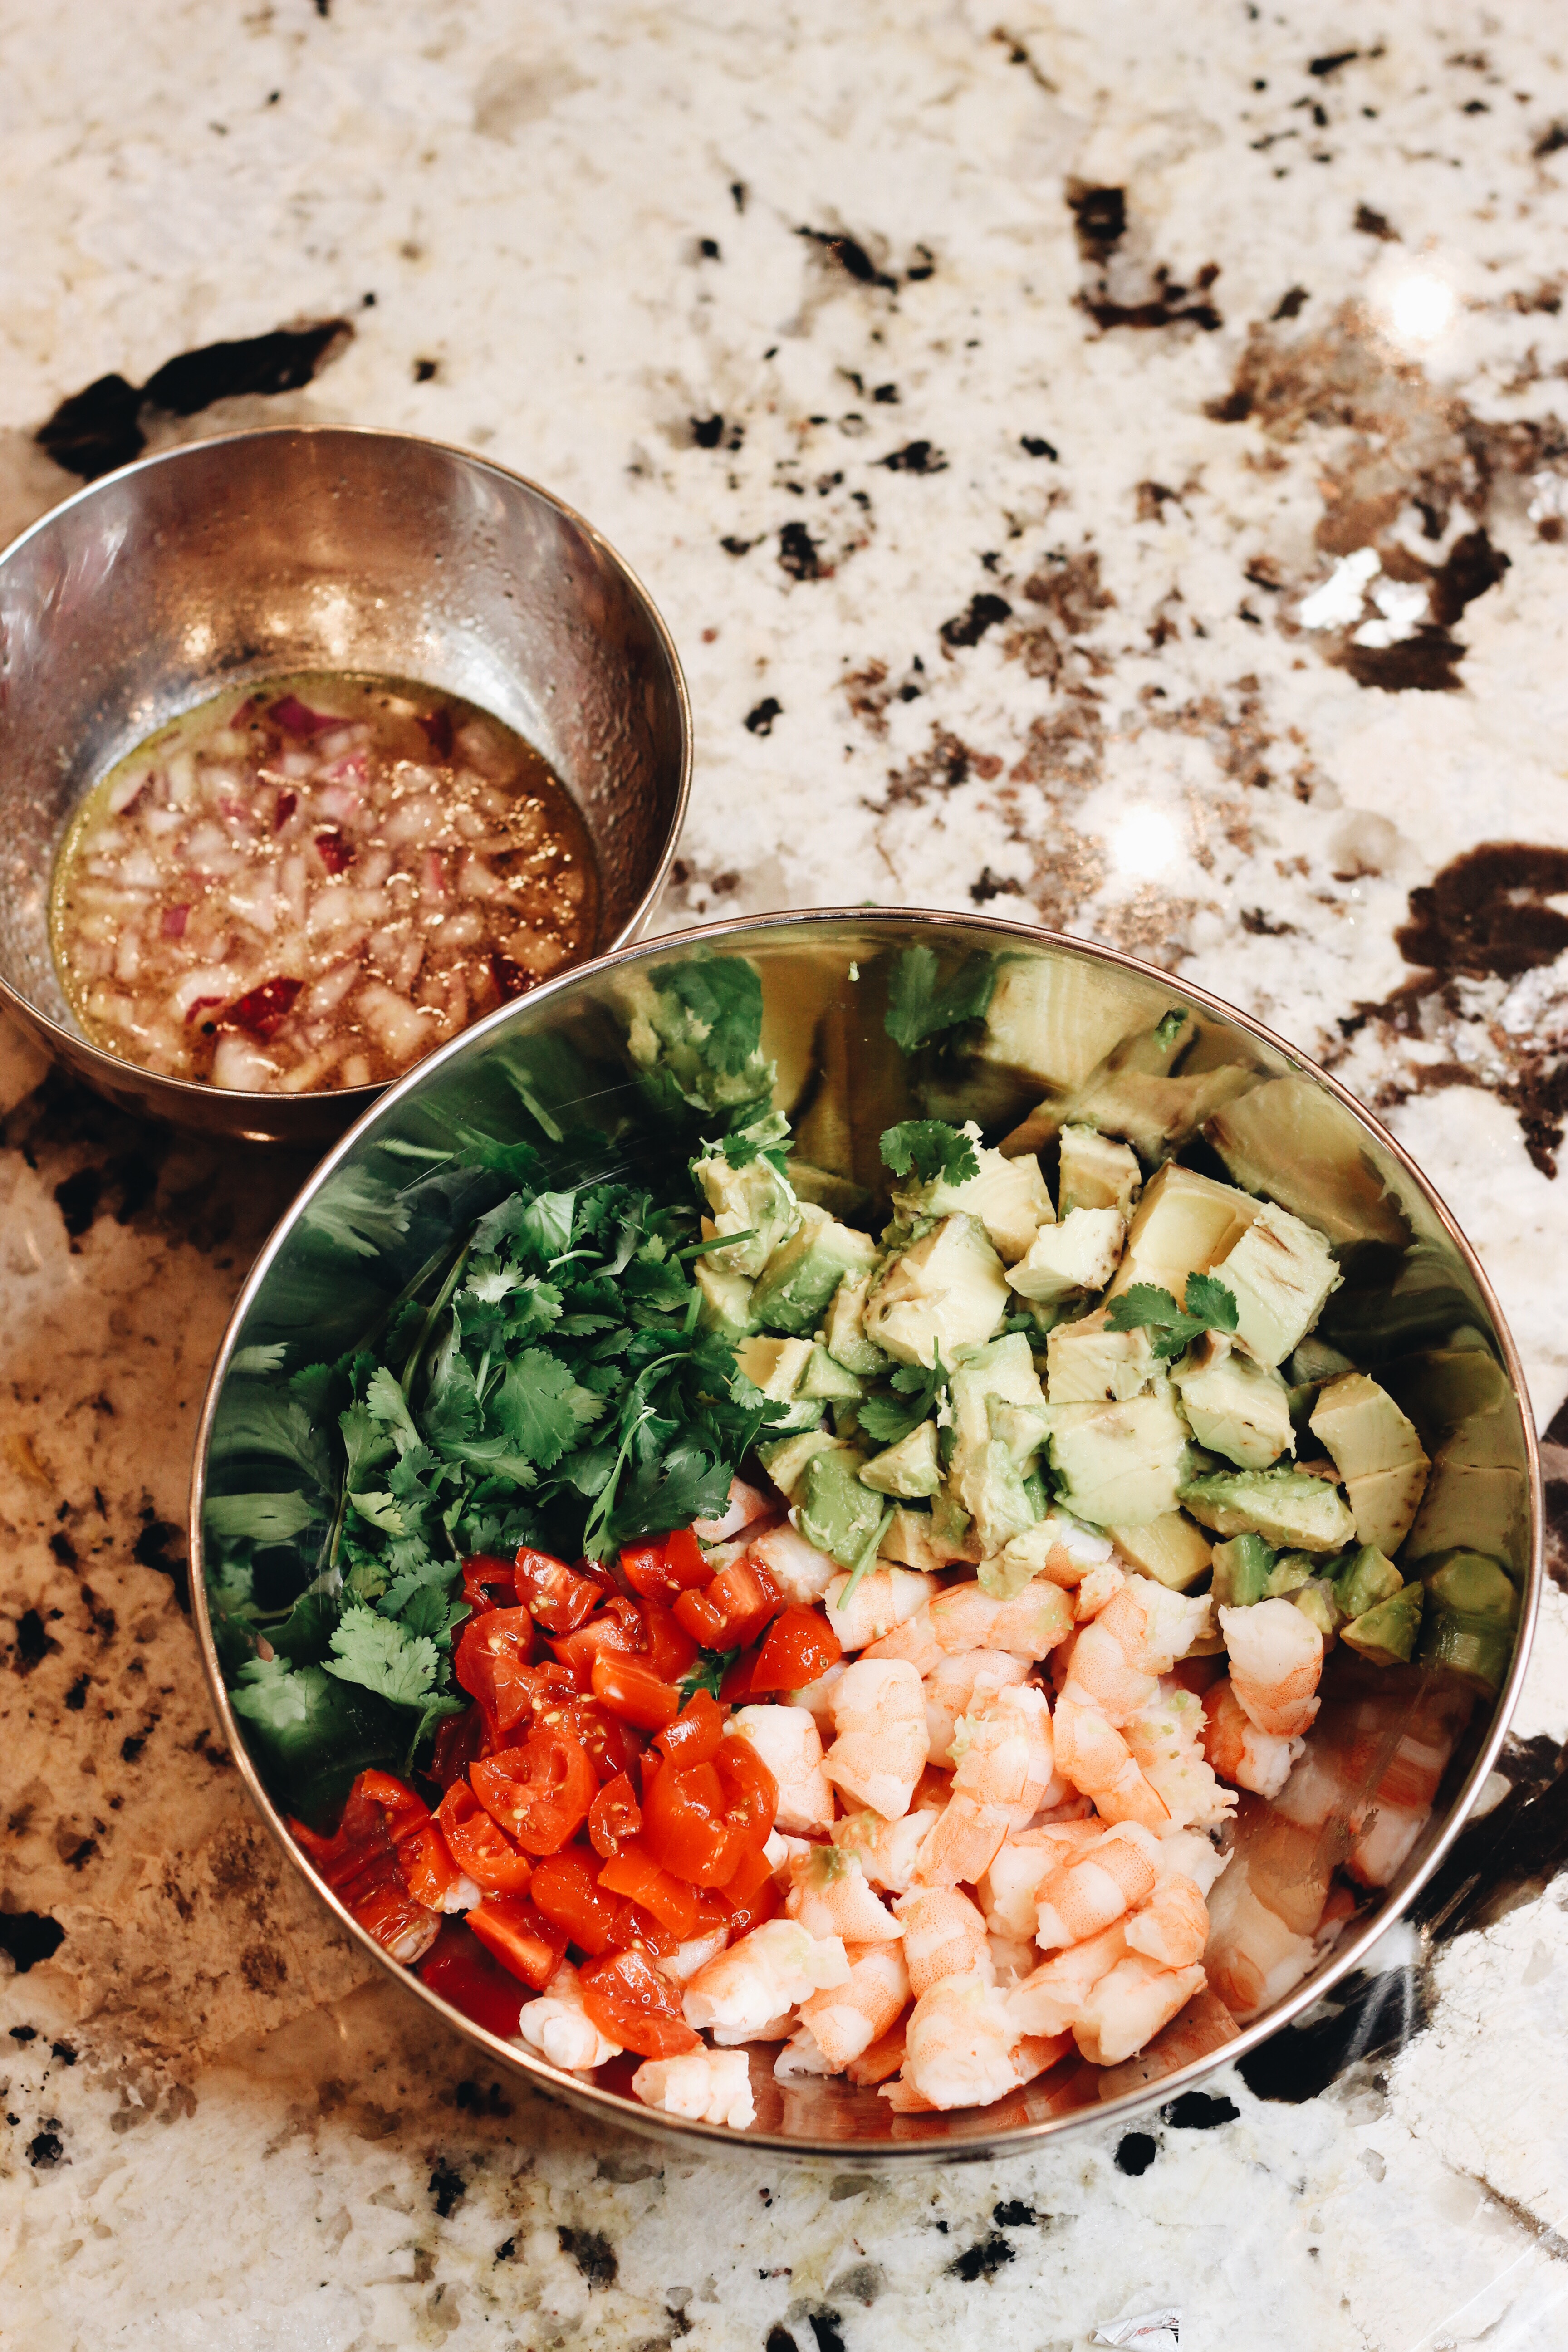 Avocado and Shrimp Salad Recipe